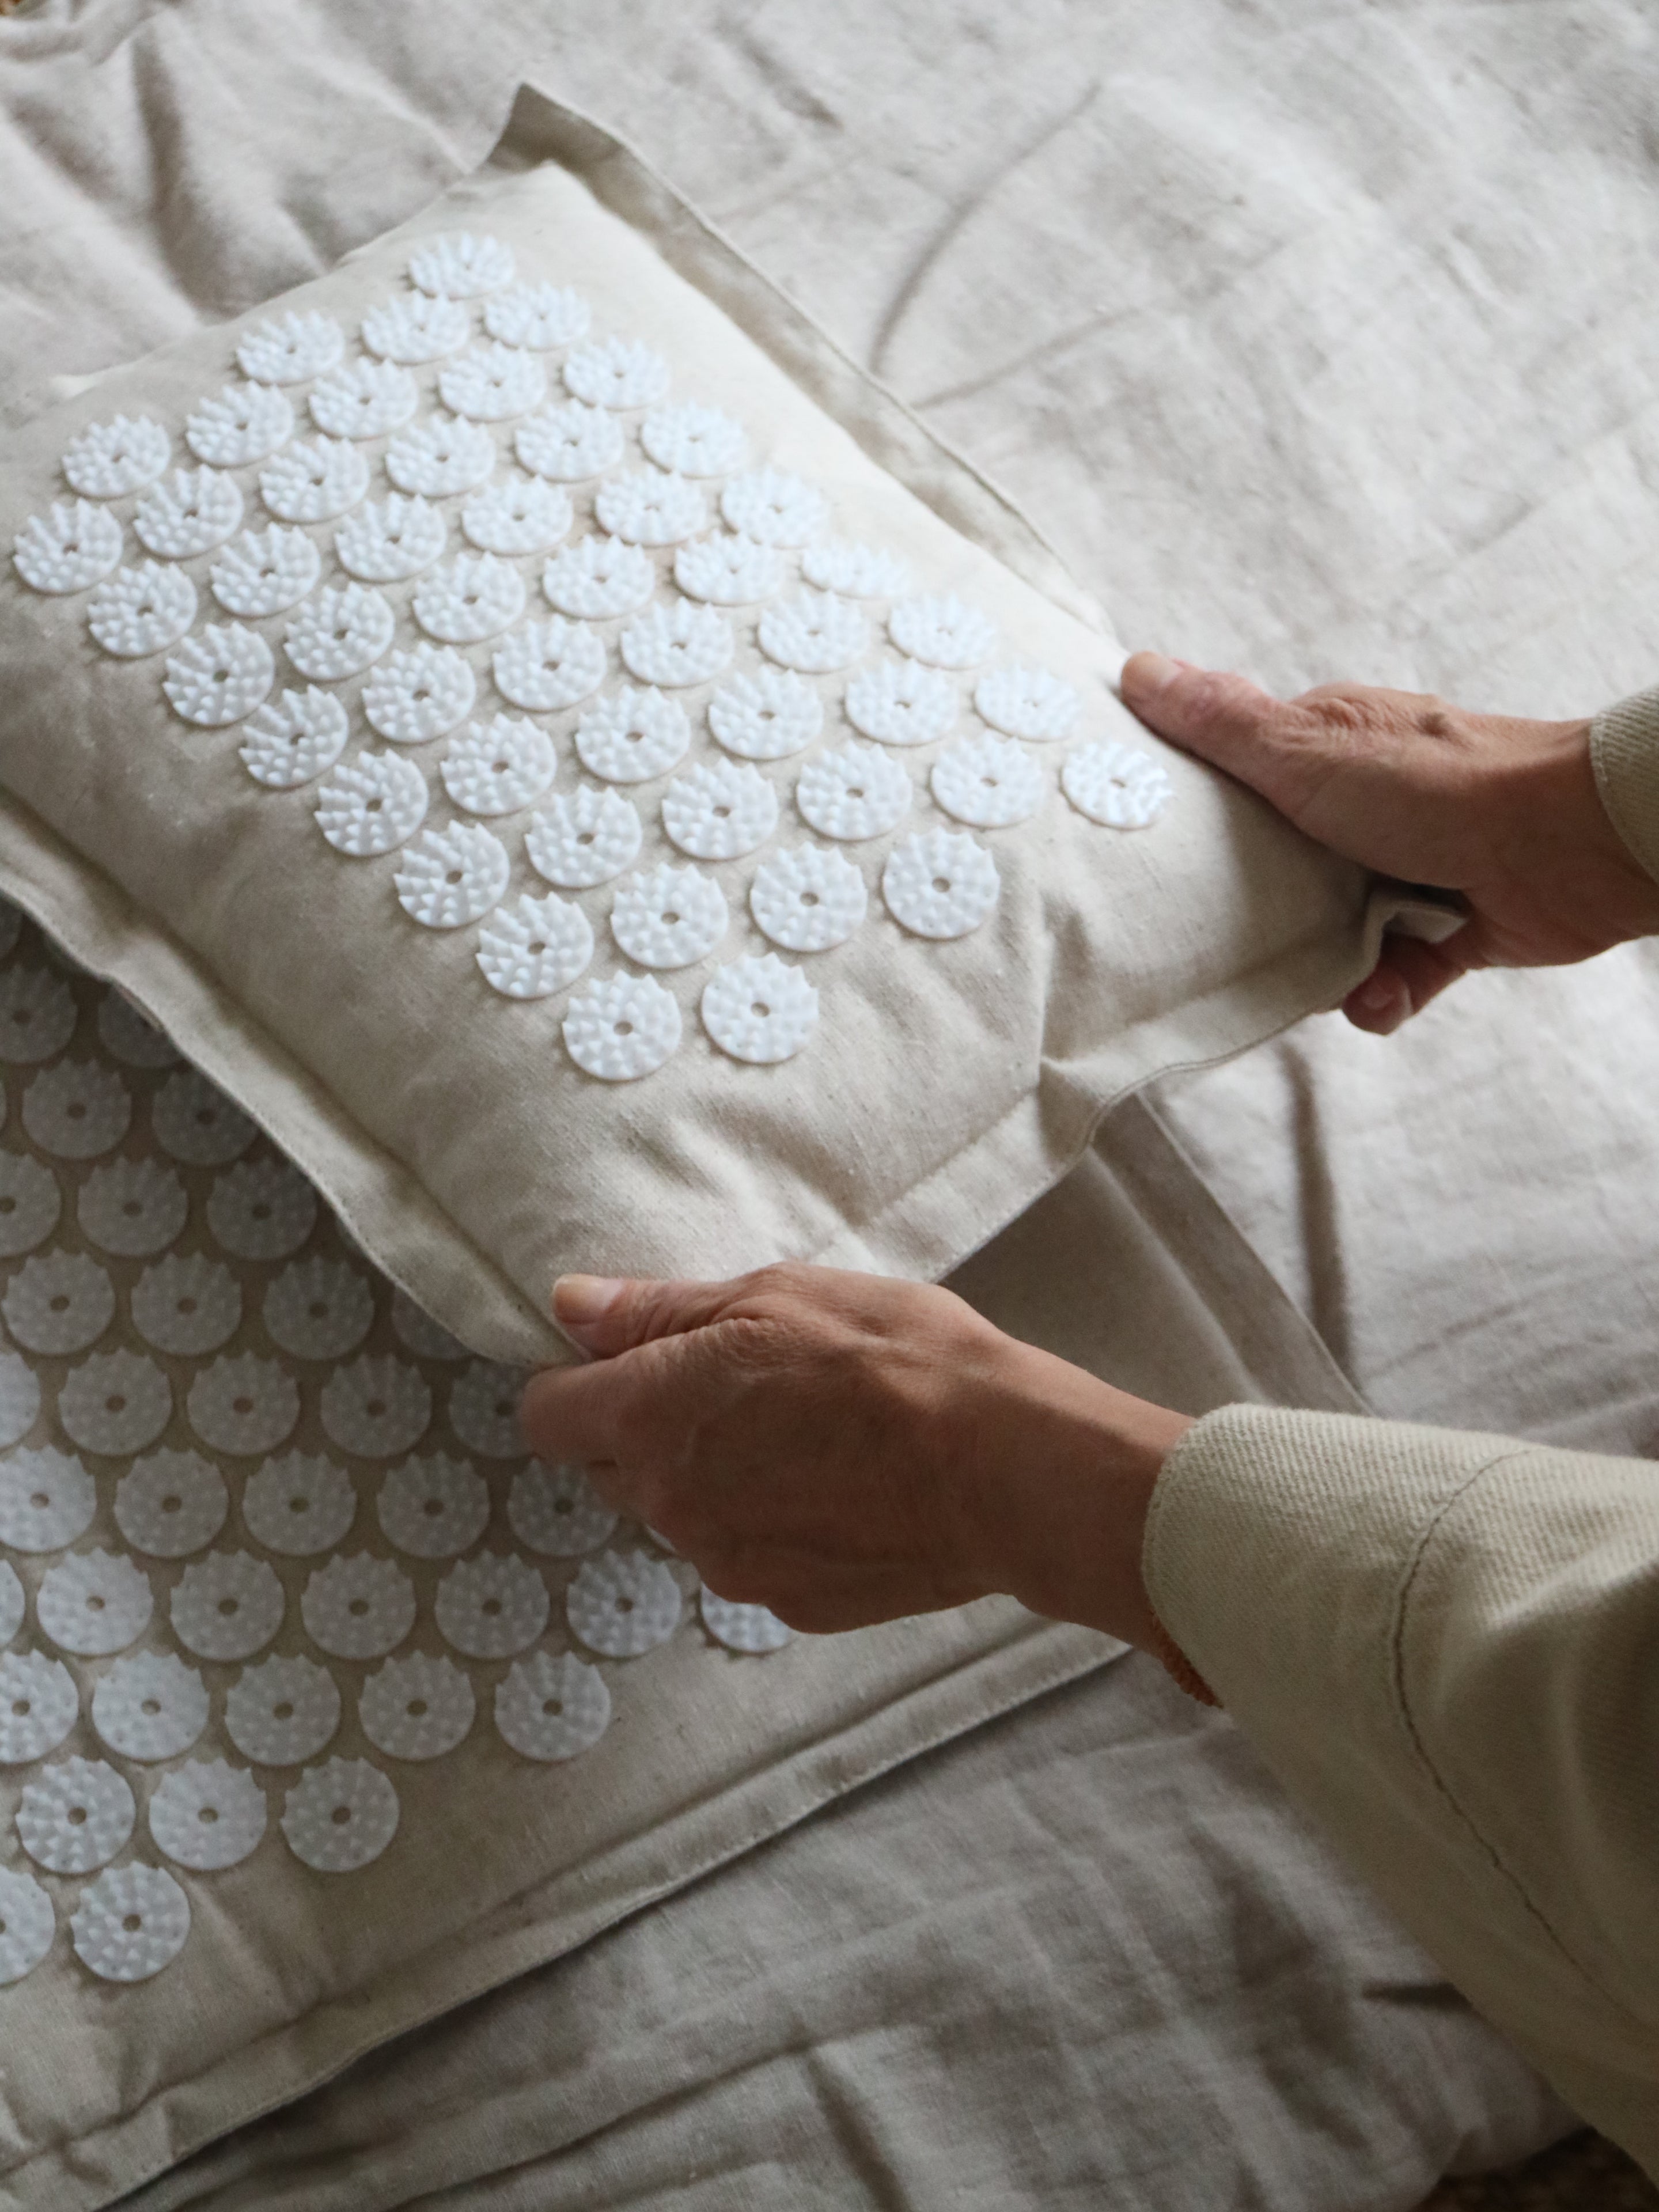 Acupressure Mat & Pillow Linen